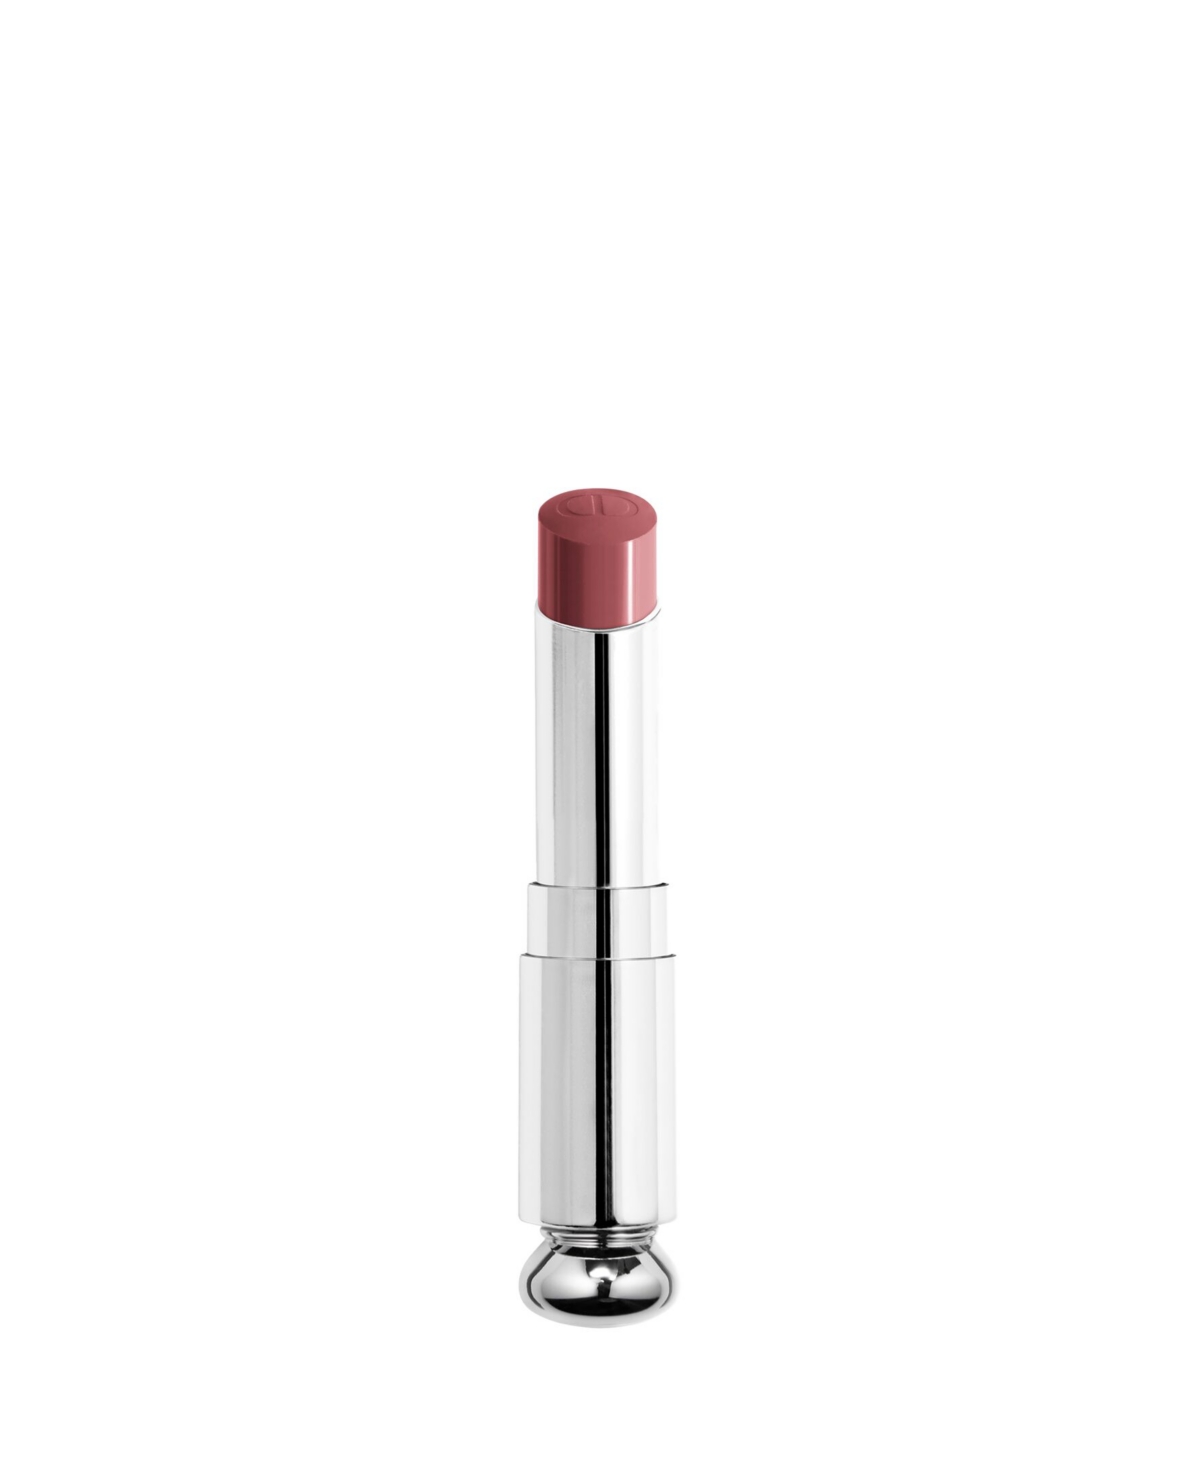 Dior Addict Shine Lipstick Refill In Pink Bow (plum)